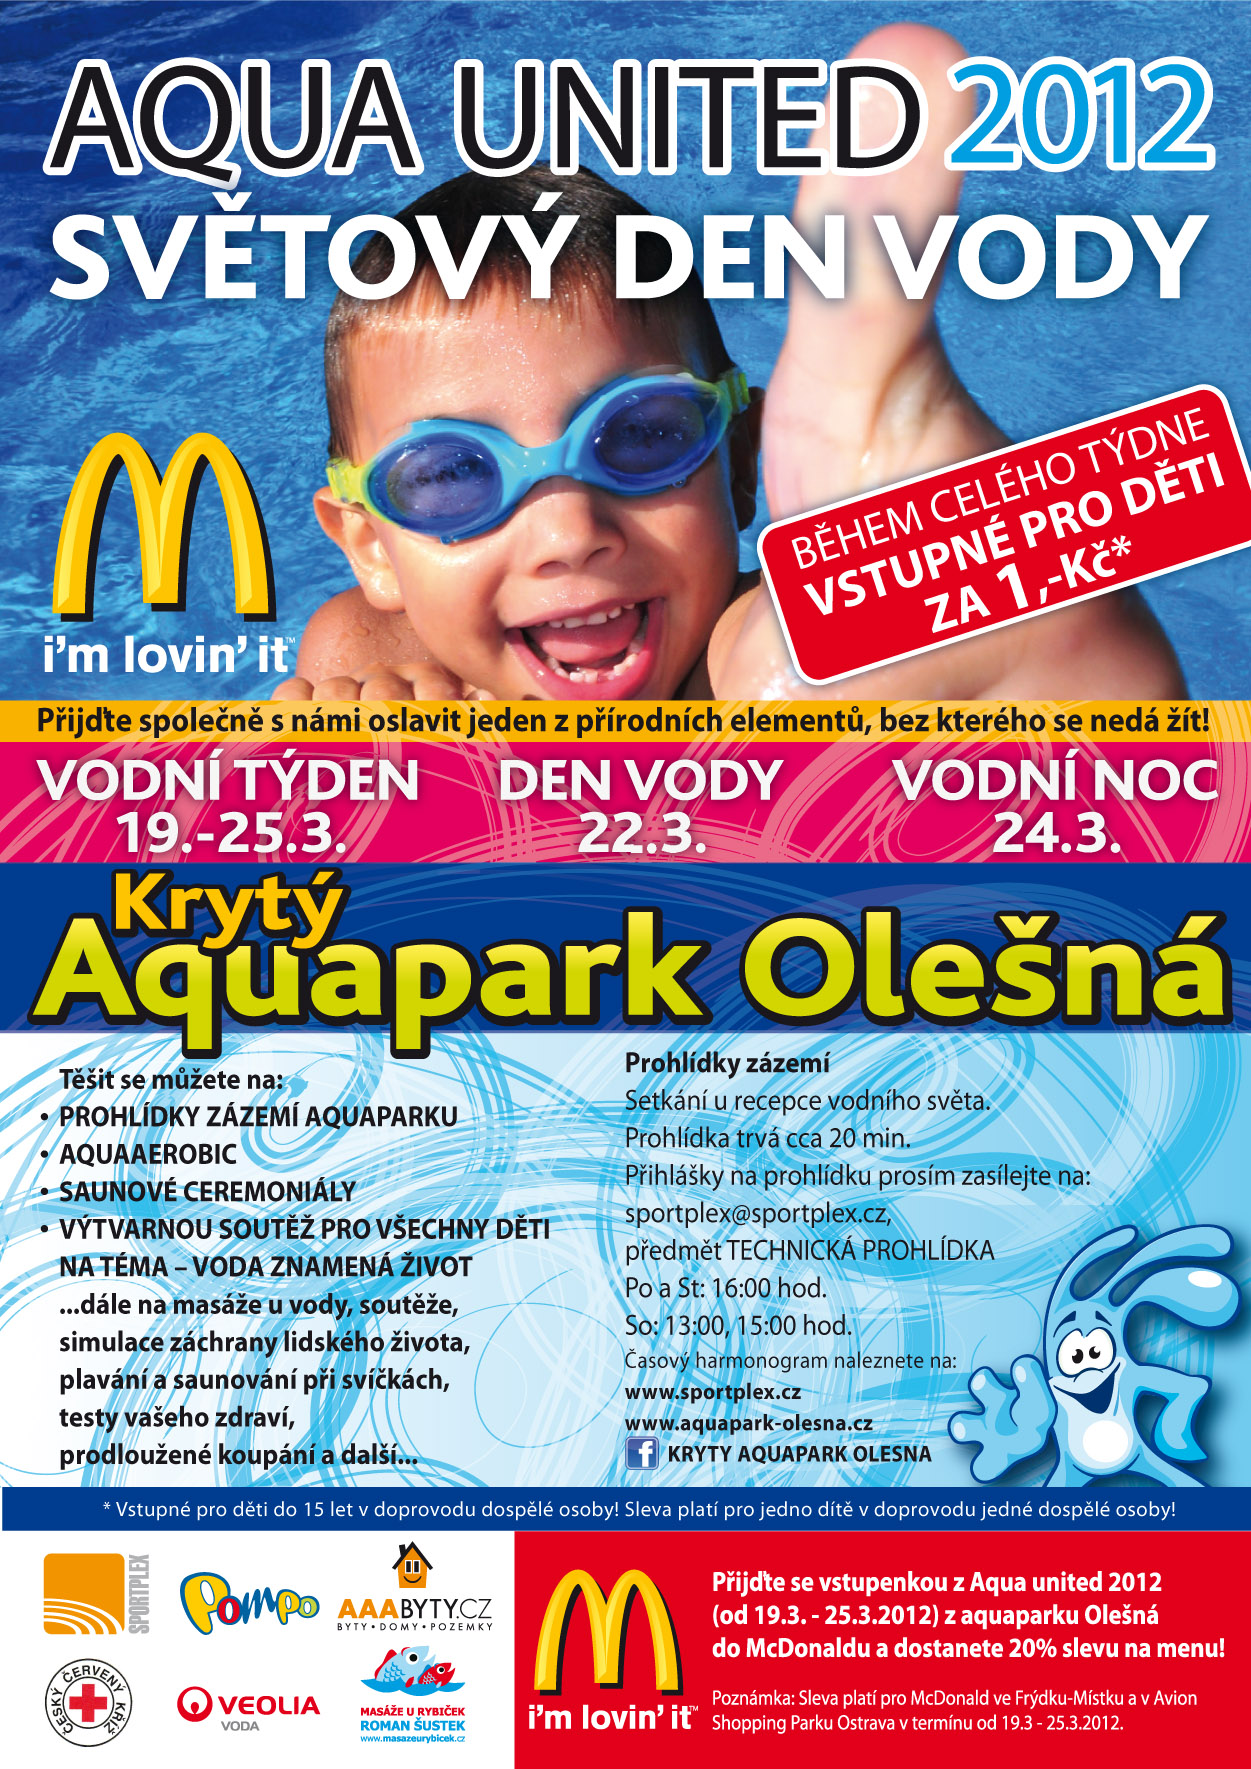 Světový den vody na aquaparku Olešná  - Děti vstup za 1,- Kč 